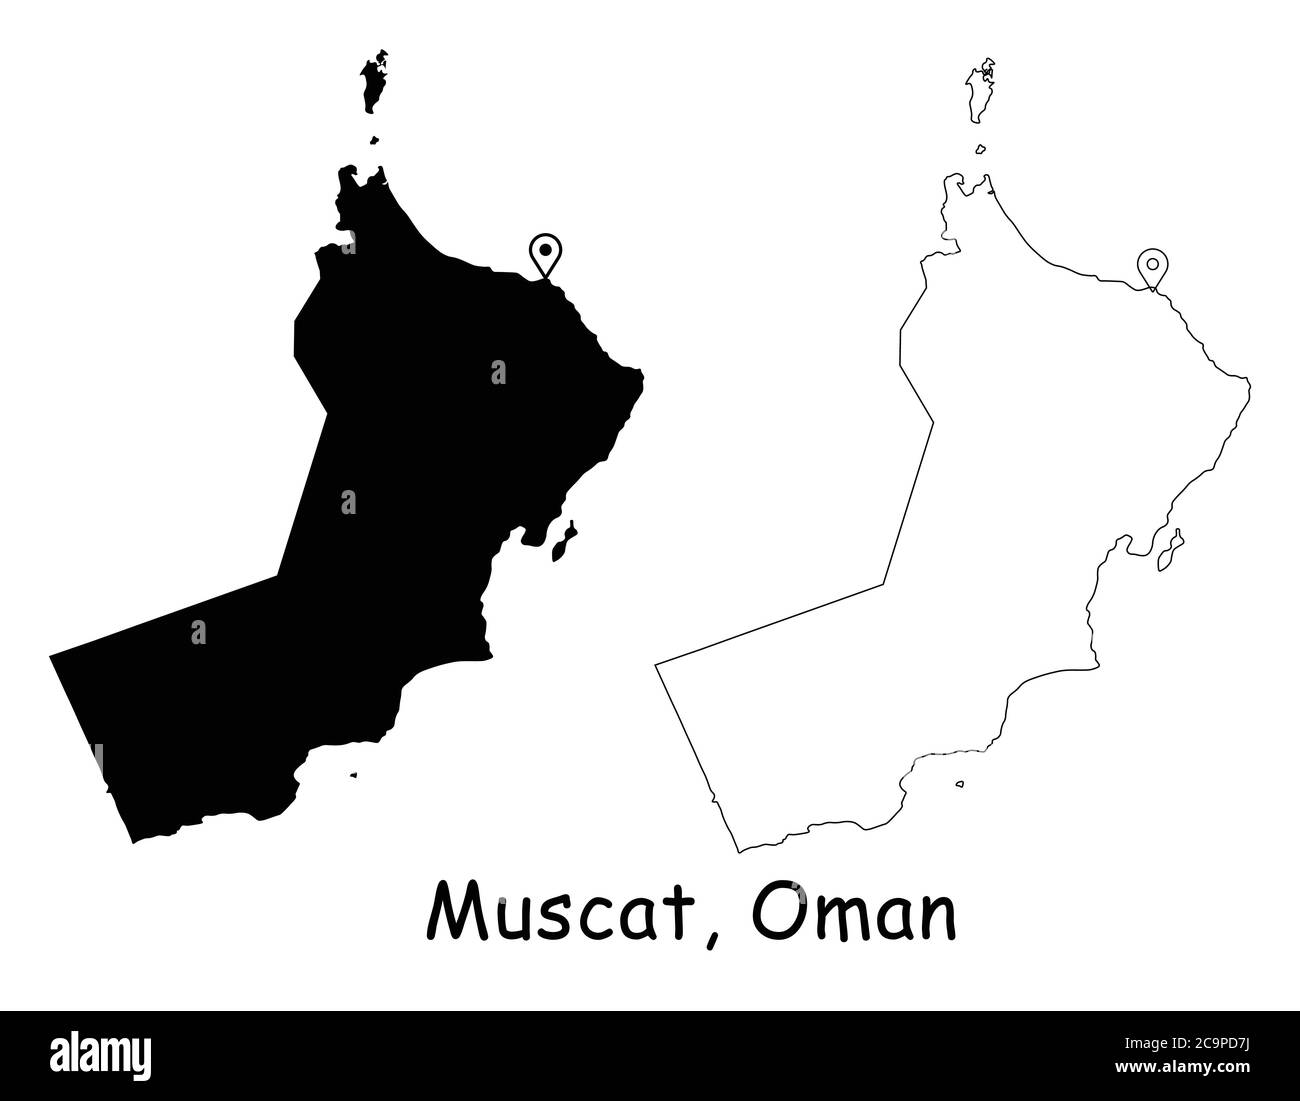 Muscat, Oman. Detaillierte Landkarte mit Lage Pin auf Hauptstadt. Schwarze Silhouette und Umrisskarten isoliert auf weißem Hintergrund. EPS-Vektor Stock Vektor